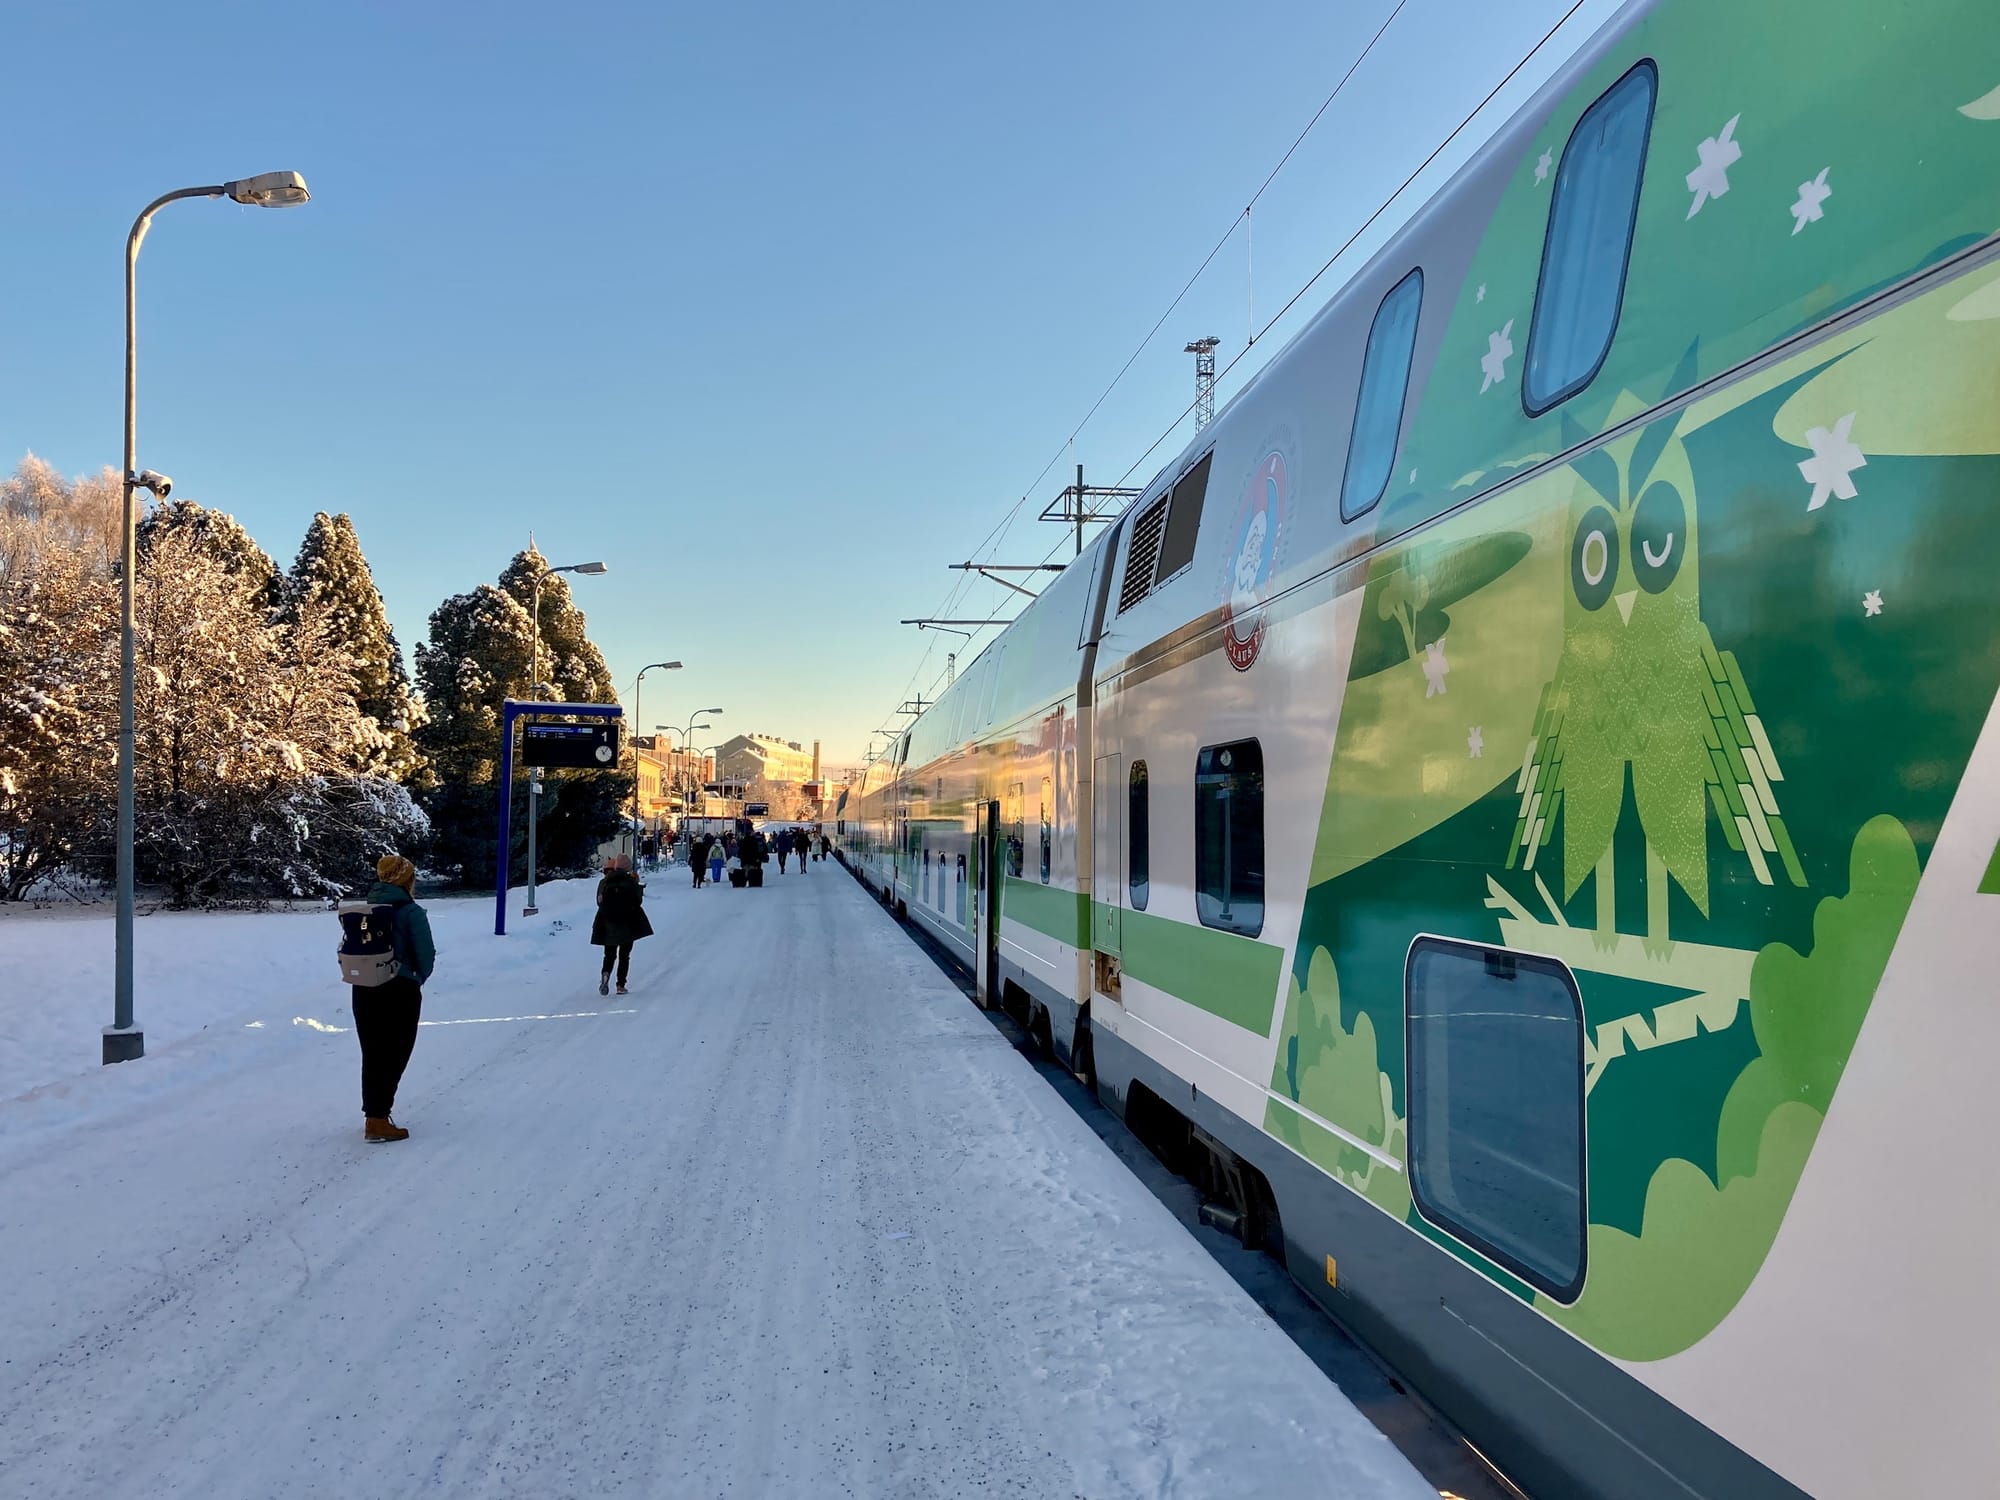 Finnischer Doppelstock-Schlafwagen mit Eulen-Motiv am Bahnsteig in Rovaniemi